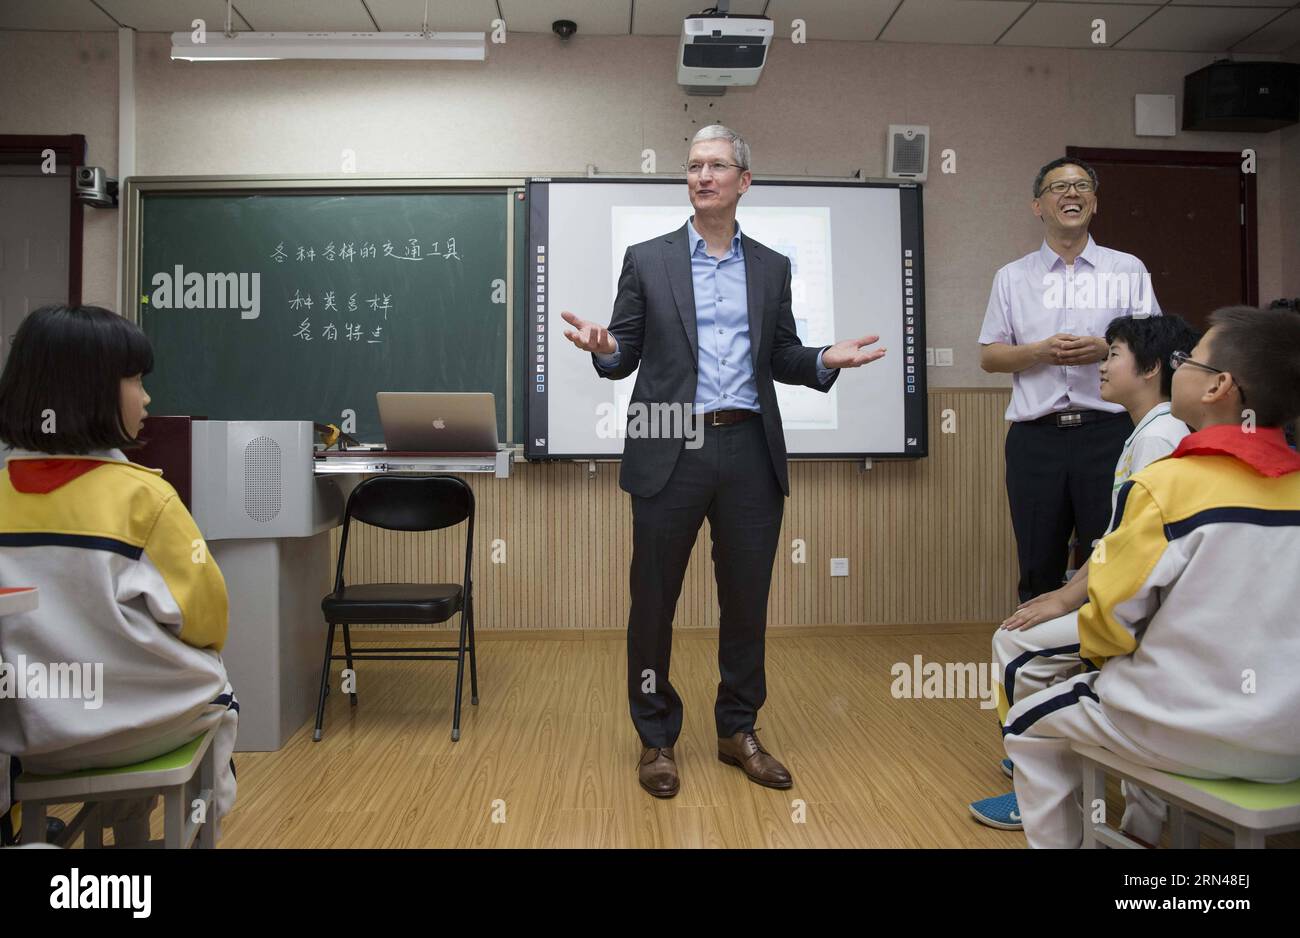 (150512) -- PECHINO, 12 maggio 2015 -- Tim Cook (C), CEO di Apple Inc., interagisce con gli studenti durante una lezione alla Primary School Attached to Communication University of China a Pechino, capitale della Cina, 12 maggio 2015. Tim Cook ha visitato la scuola primaria collegata alla Communication University of China martedì. ) (Yxb) CHINA-BEIJING-APPLE CEO-PRIMARY SCHOOL-VISIT(CN) LixMing PUBLICATIONxNOTxINxCHN 150512 Pechino 12 maggio 2015 Tim Cook C CEO di Apple Inc Interact with Students during a Lesson AT the Primary School attached to Communication University of China in Beijing Capital of China May Foto Stock